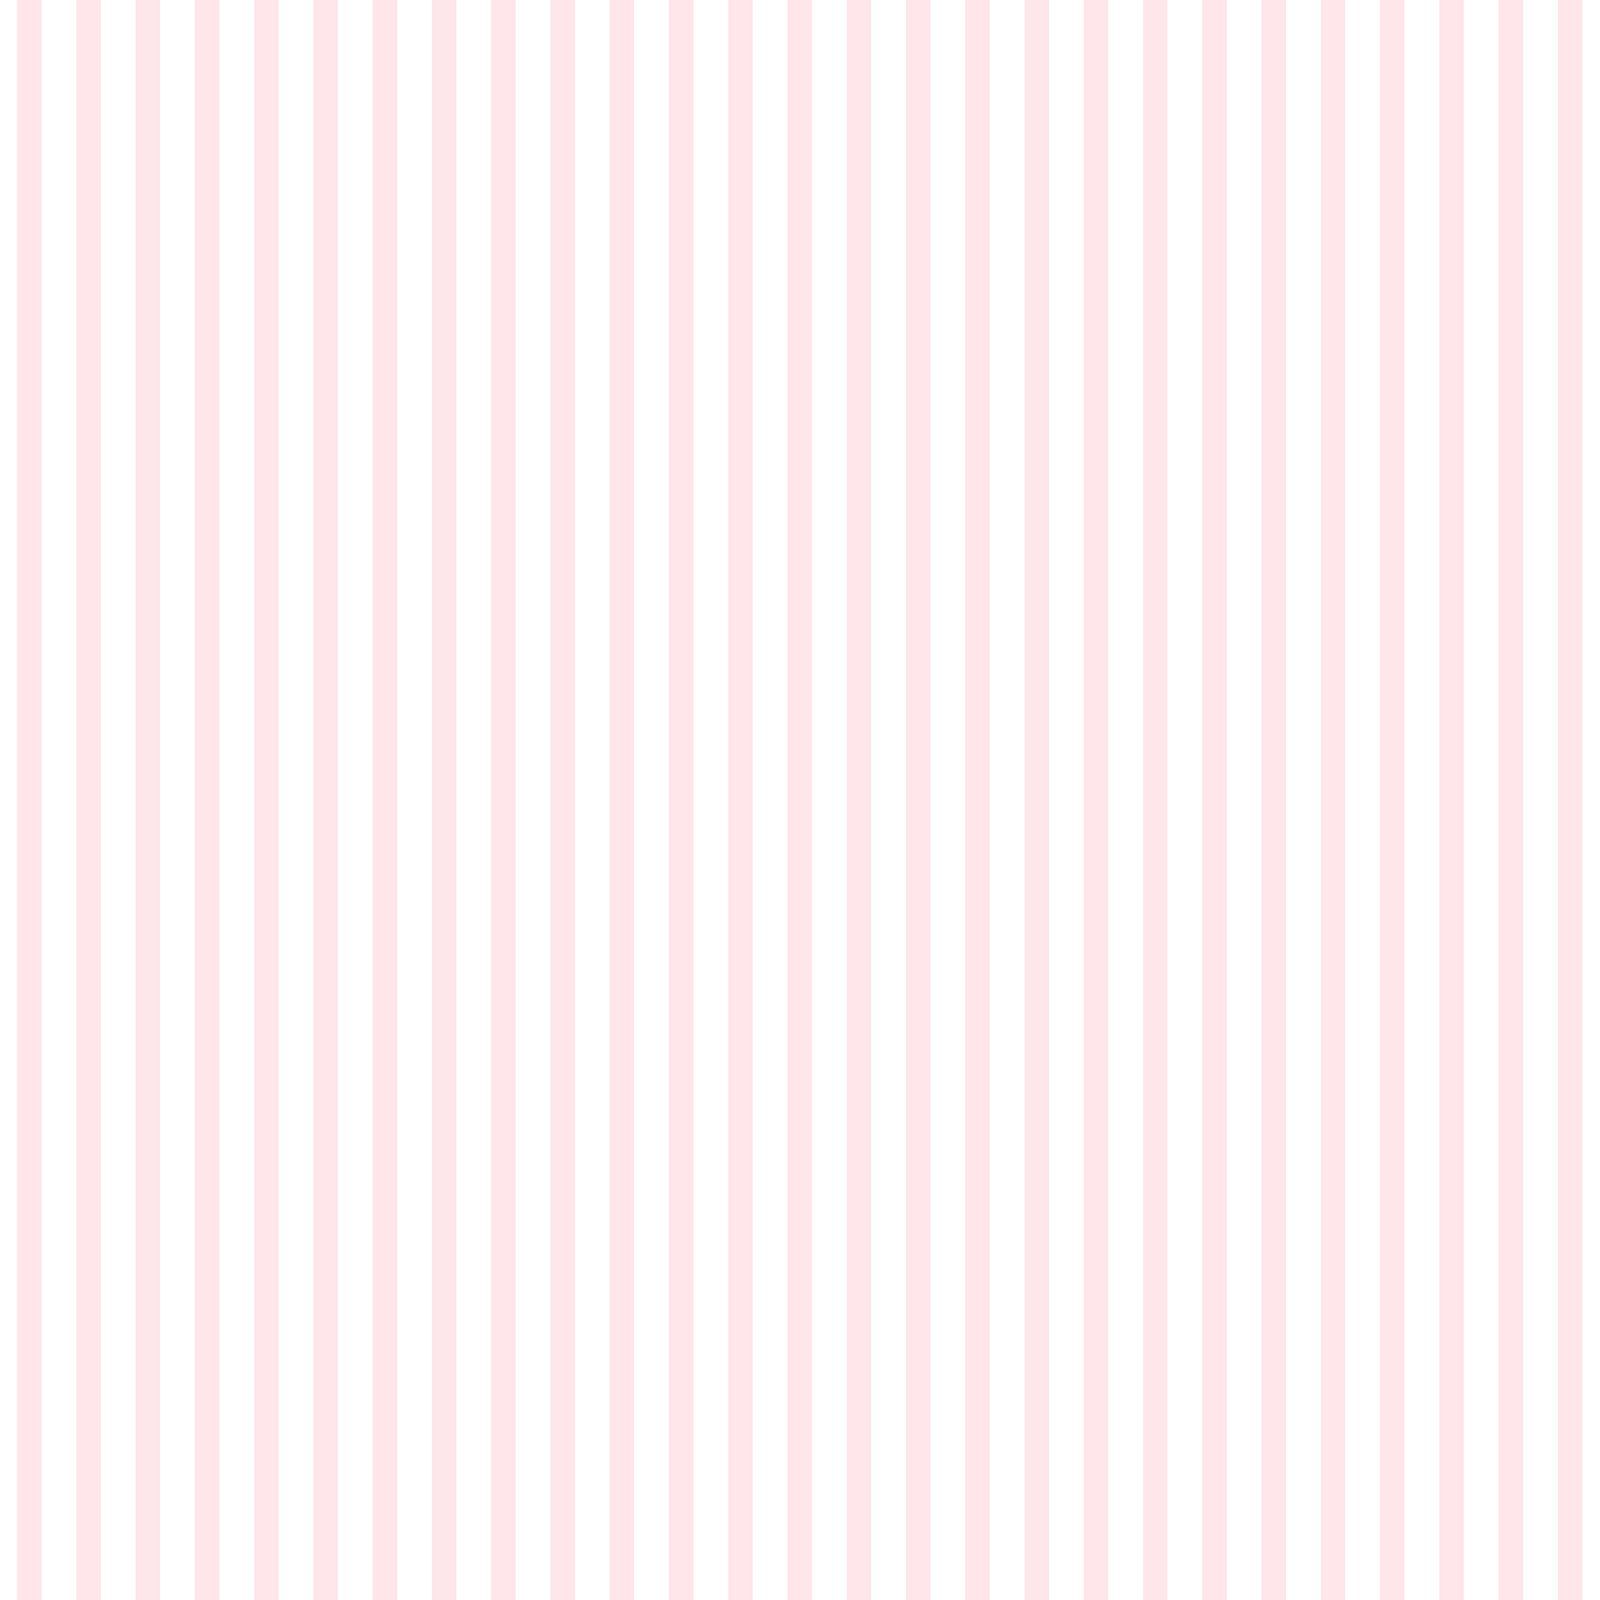  Streifen Hintergrundbild 1600x1600. Kindertapete Papier Streifen fein weiß rosa 102302